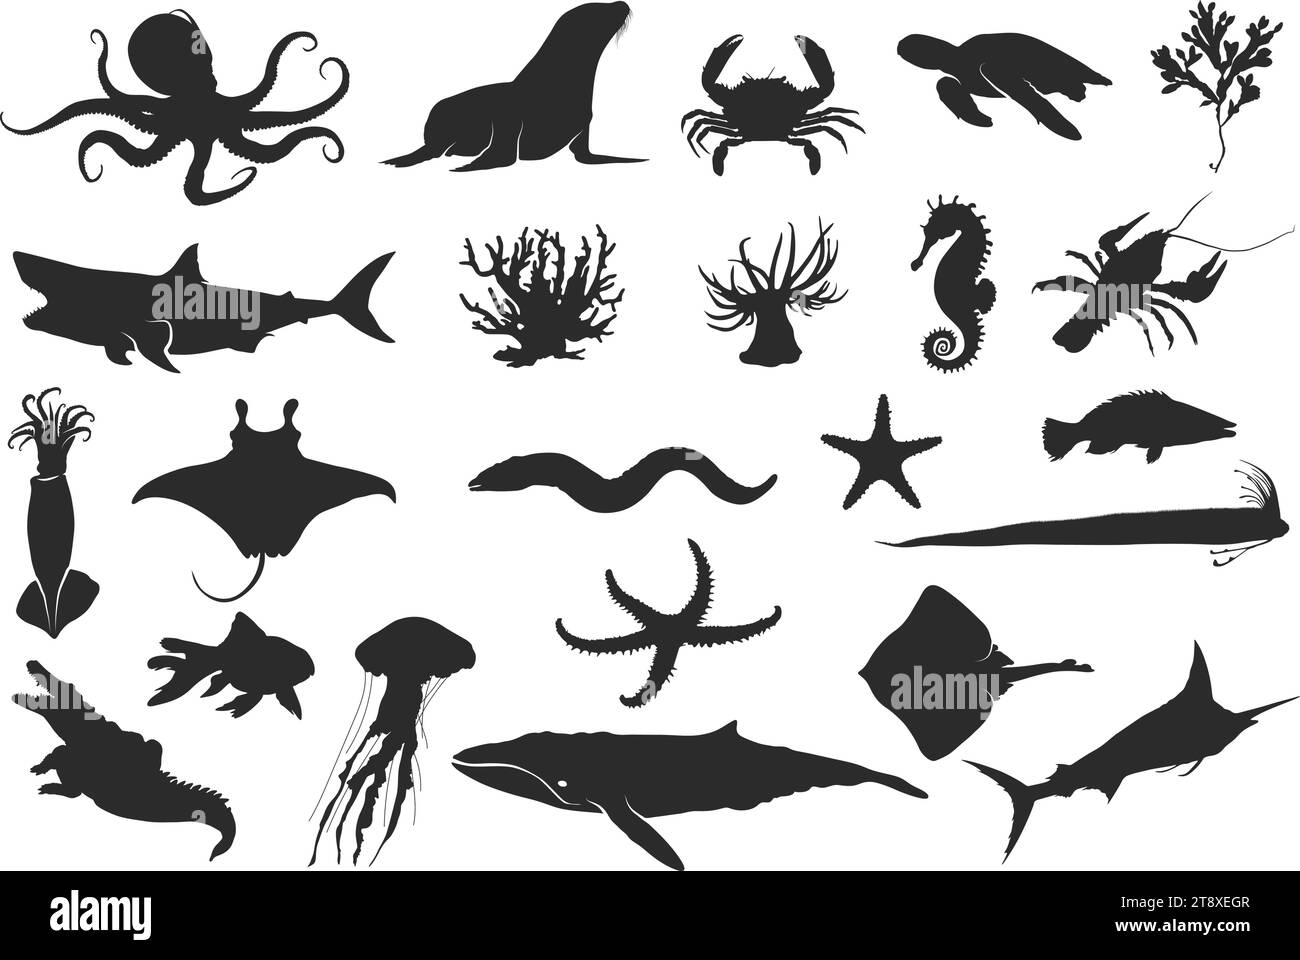 Meerestier Silhouette, Ozeantier Silhouette, Schwarze Silhouetten von Fischen, Seepferdchen, Muscheln, Tintenfisch, Quallen, Delfine, Seesterne usw. Stock Vektor